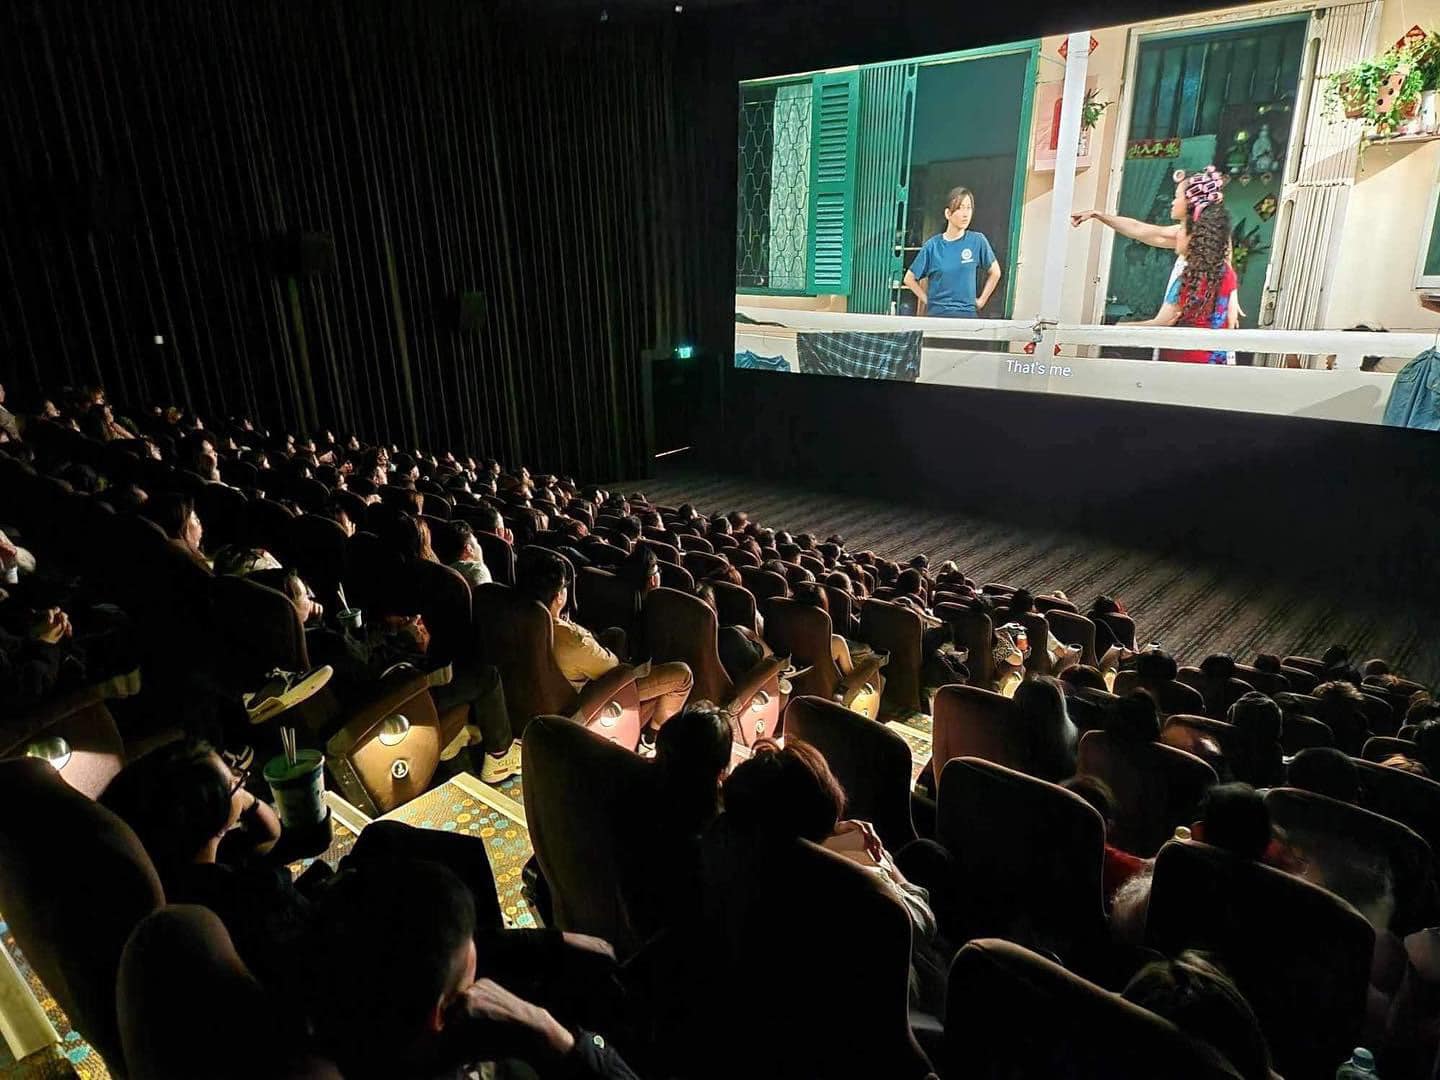 310 tỷ đồng sau 9 ngày chiếu, phim "Mai" trở thành phim Việt bán vé nhanh nhất lịch sử?- Ảnh 2.